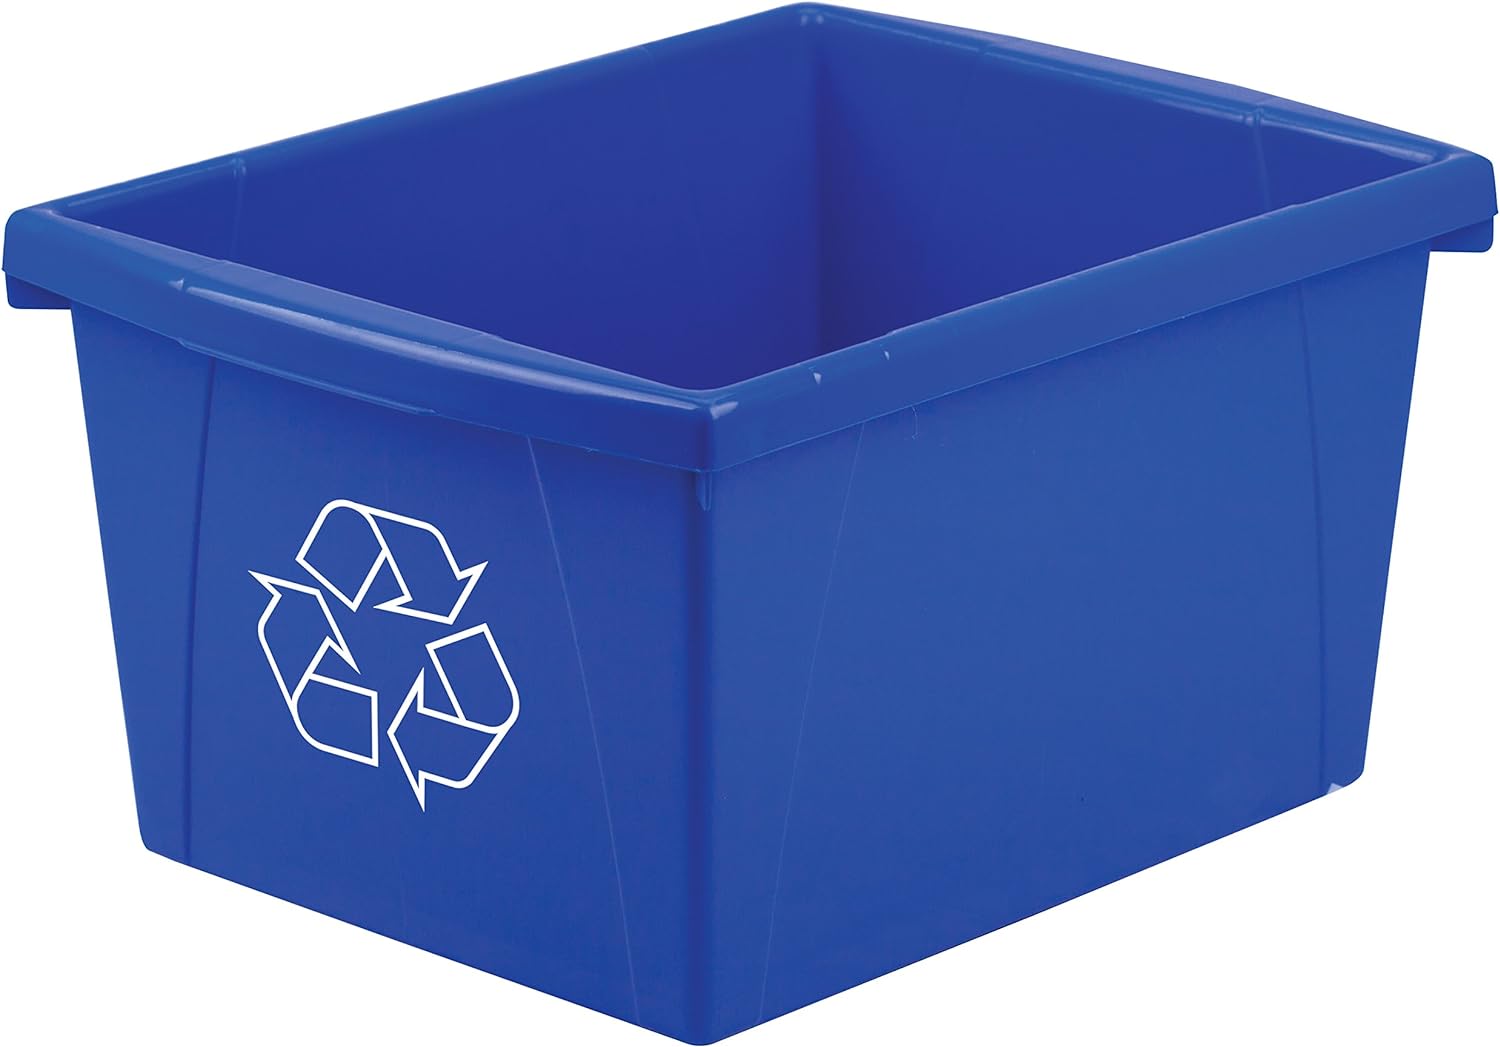 Storex 4 Gallon Recycle Bin Review